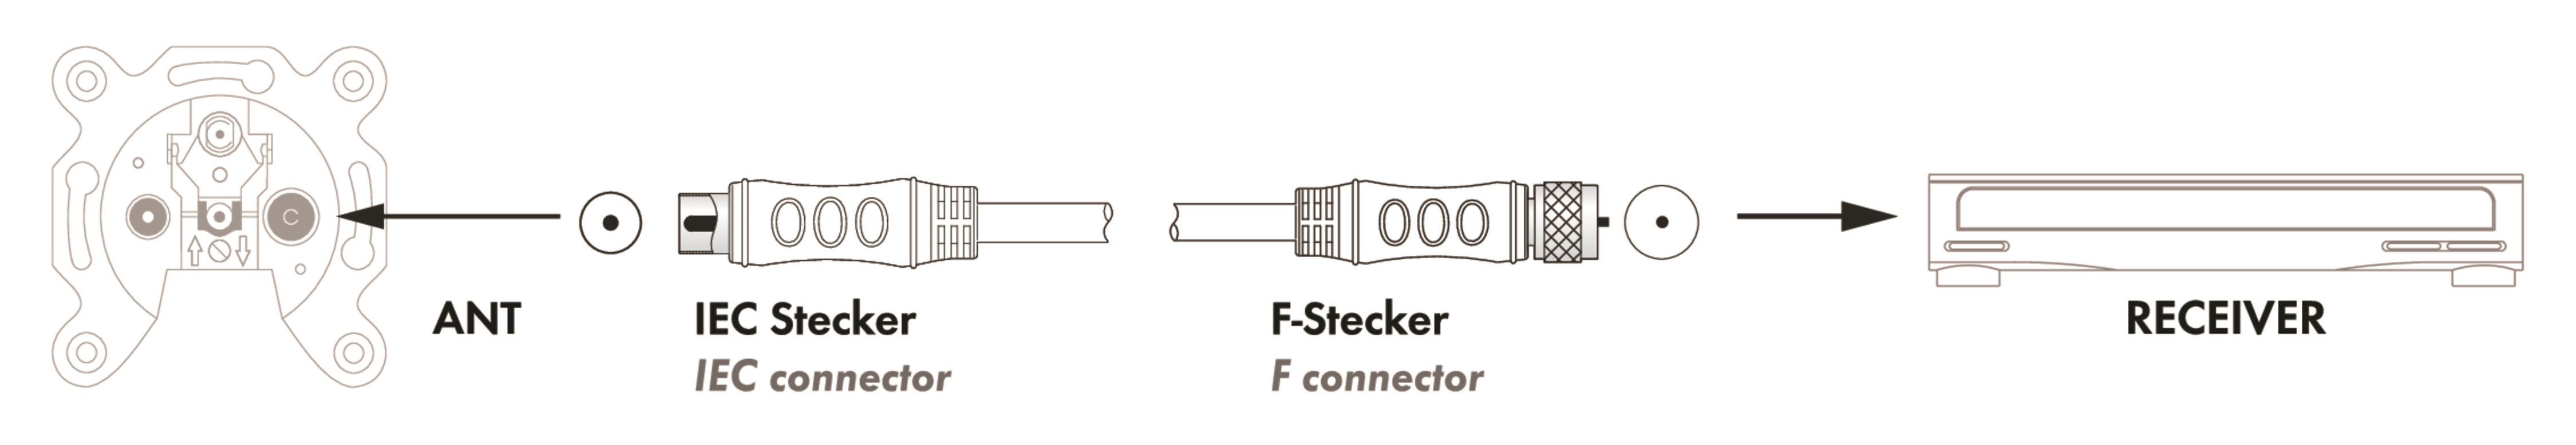 (90 Stecker 532- F-Stecker Adapterkabel zu SCHWAIGER SAT/Antennen -KVCKHQ185 dB) IEC